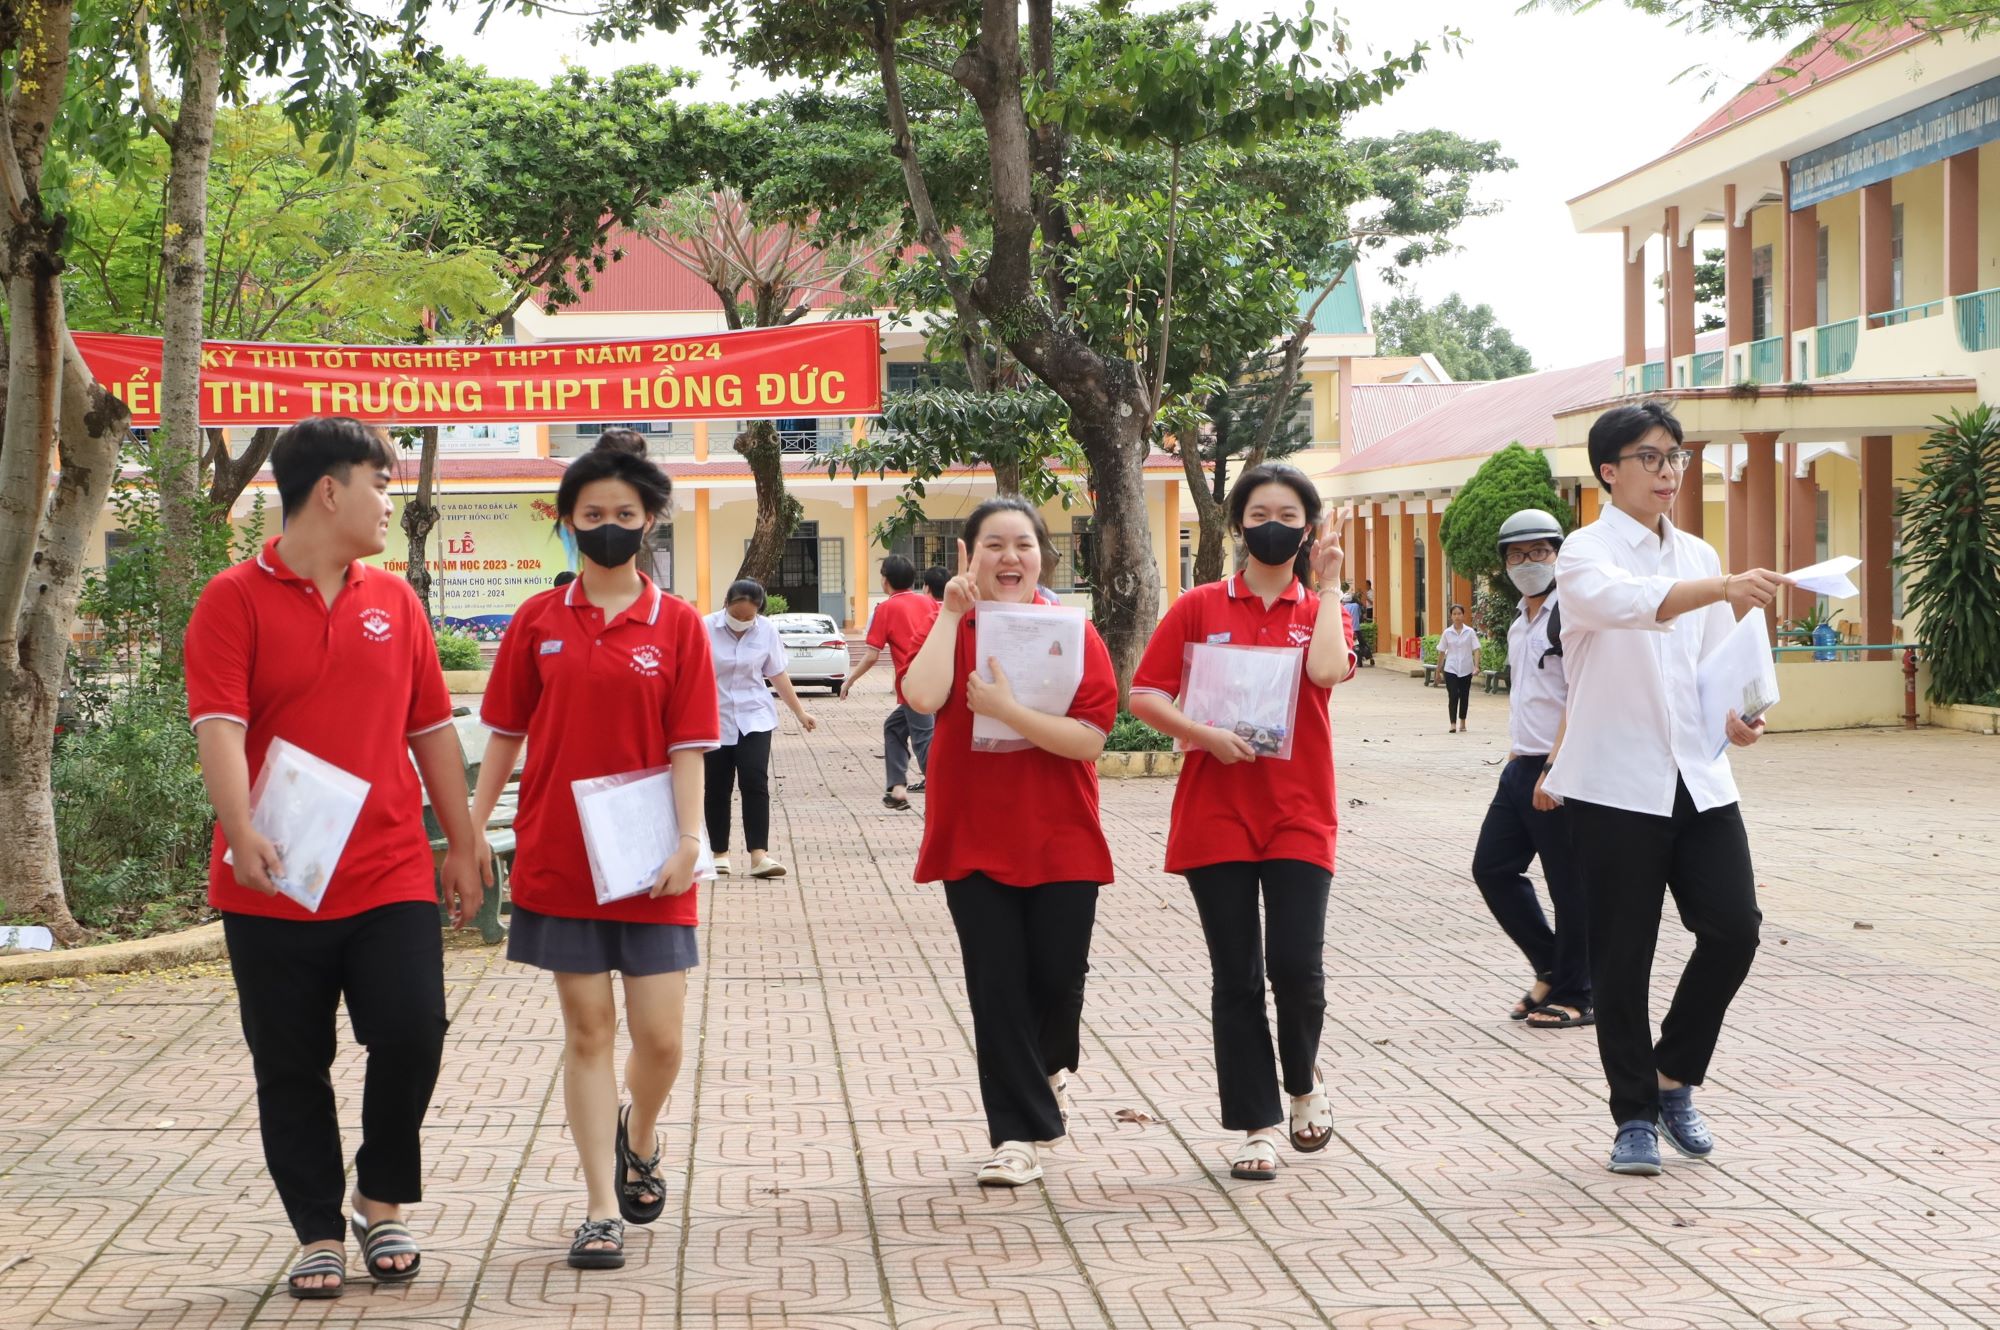 Thí sinh dự thi tốt nghiệp THPT năm 2024 tại Đắk Lắk đạt 99,61%